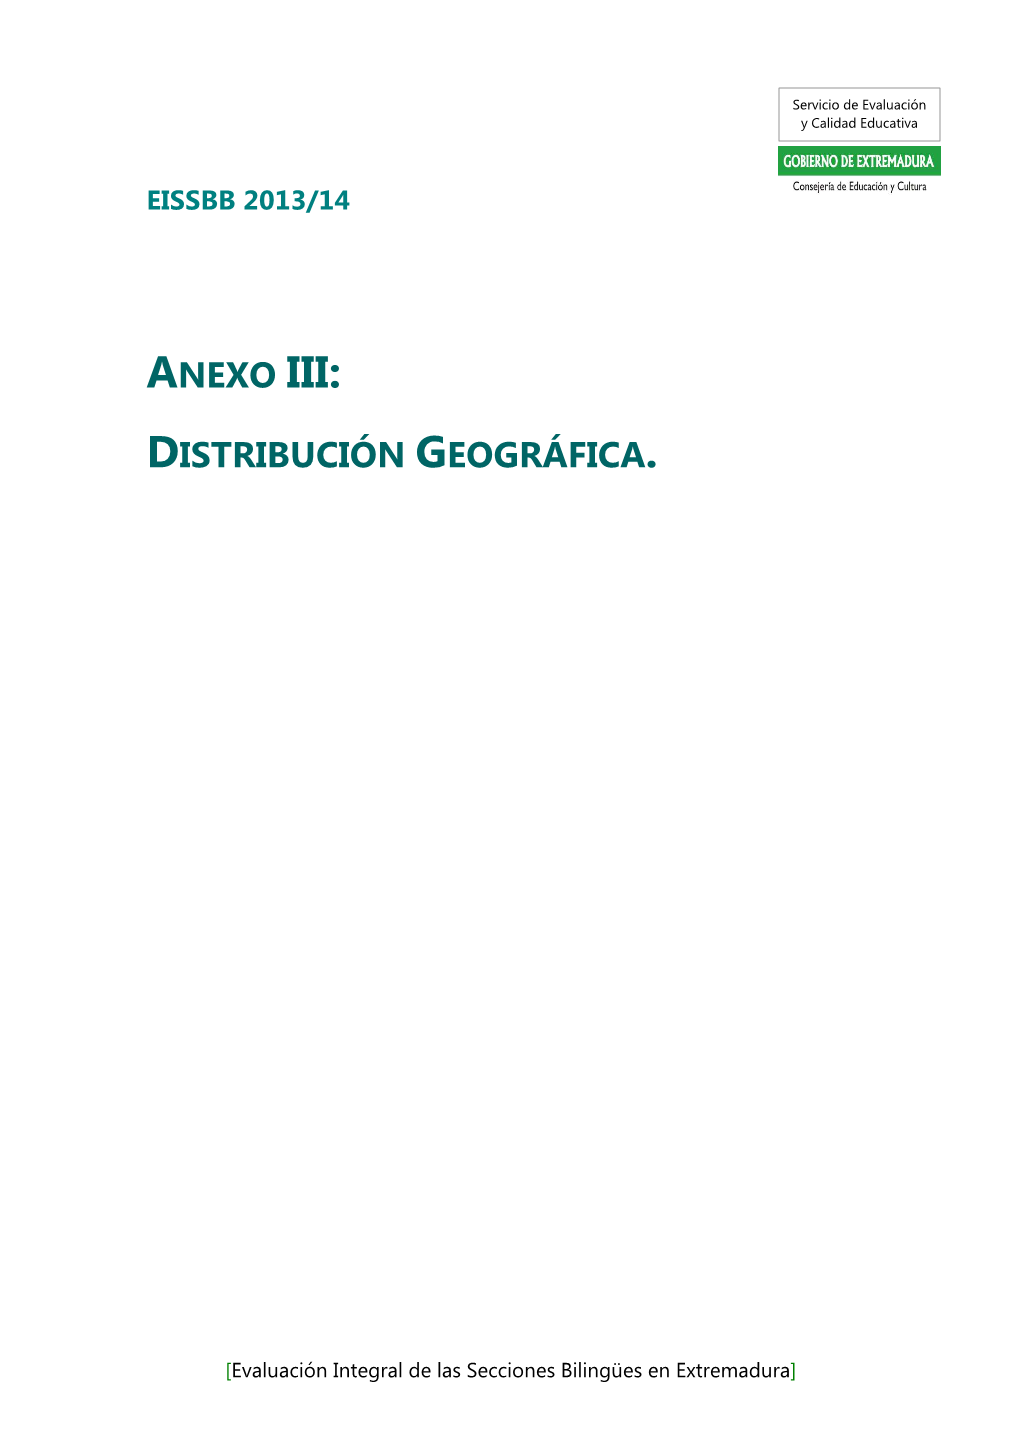 Anexoiii. Distribución Geográfica Y Listado V1.02